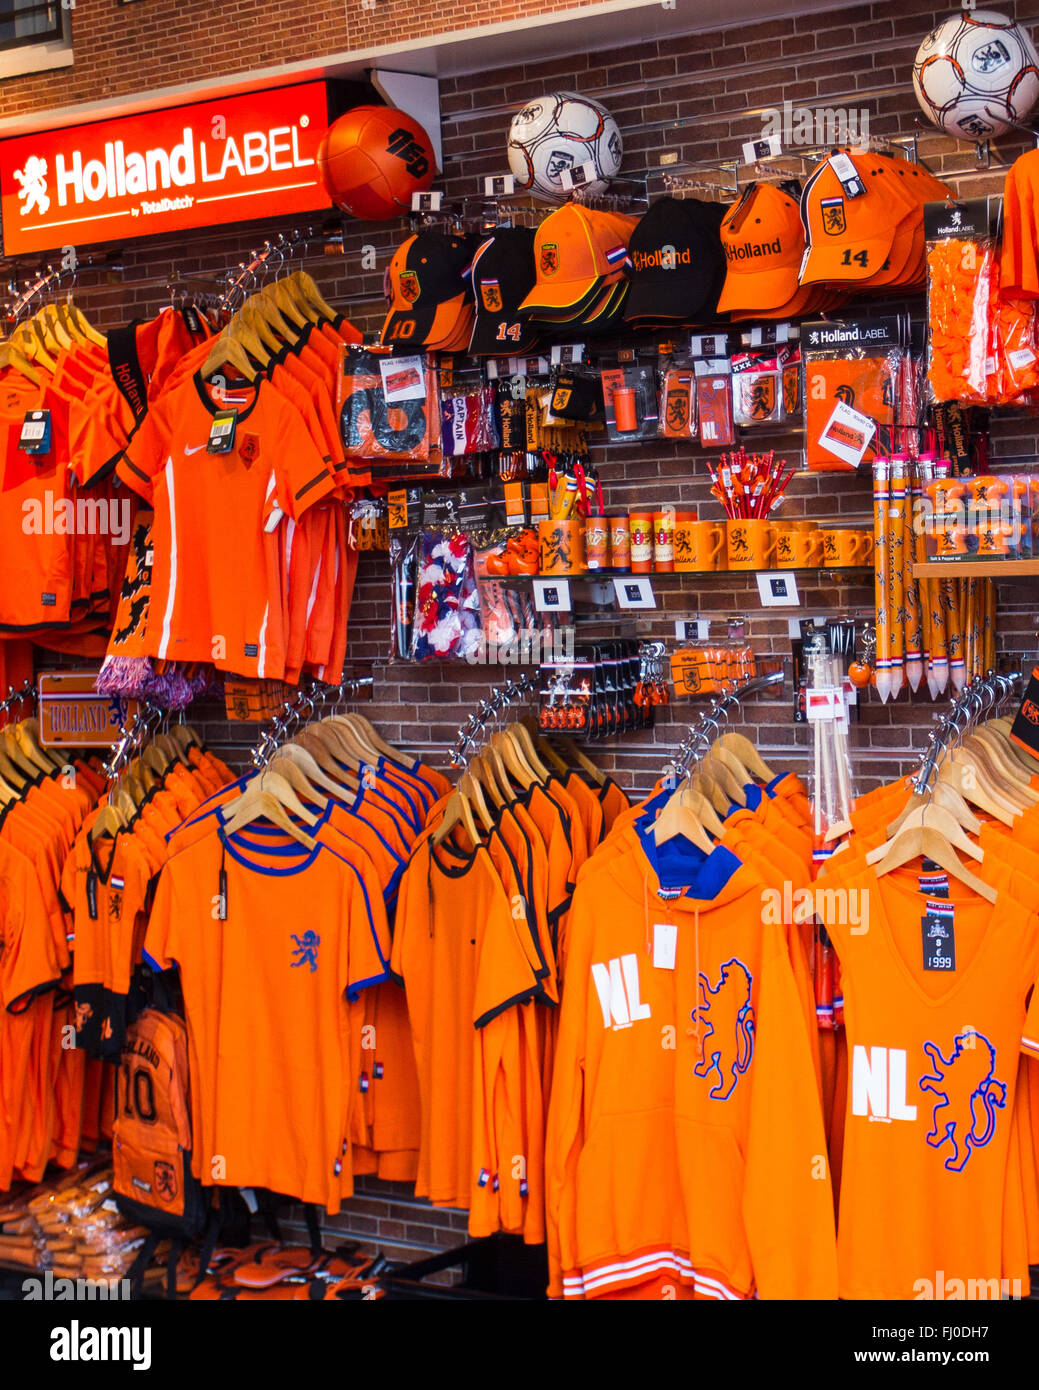 Camisetas de fútbol, el equipo nacional holandés camisetas y chaquetas, sombreros y otros recuerdos, todos en el nacional de color naranja Fotografía de stock -